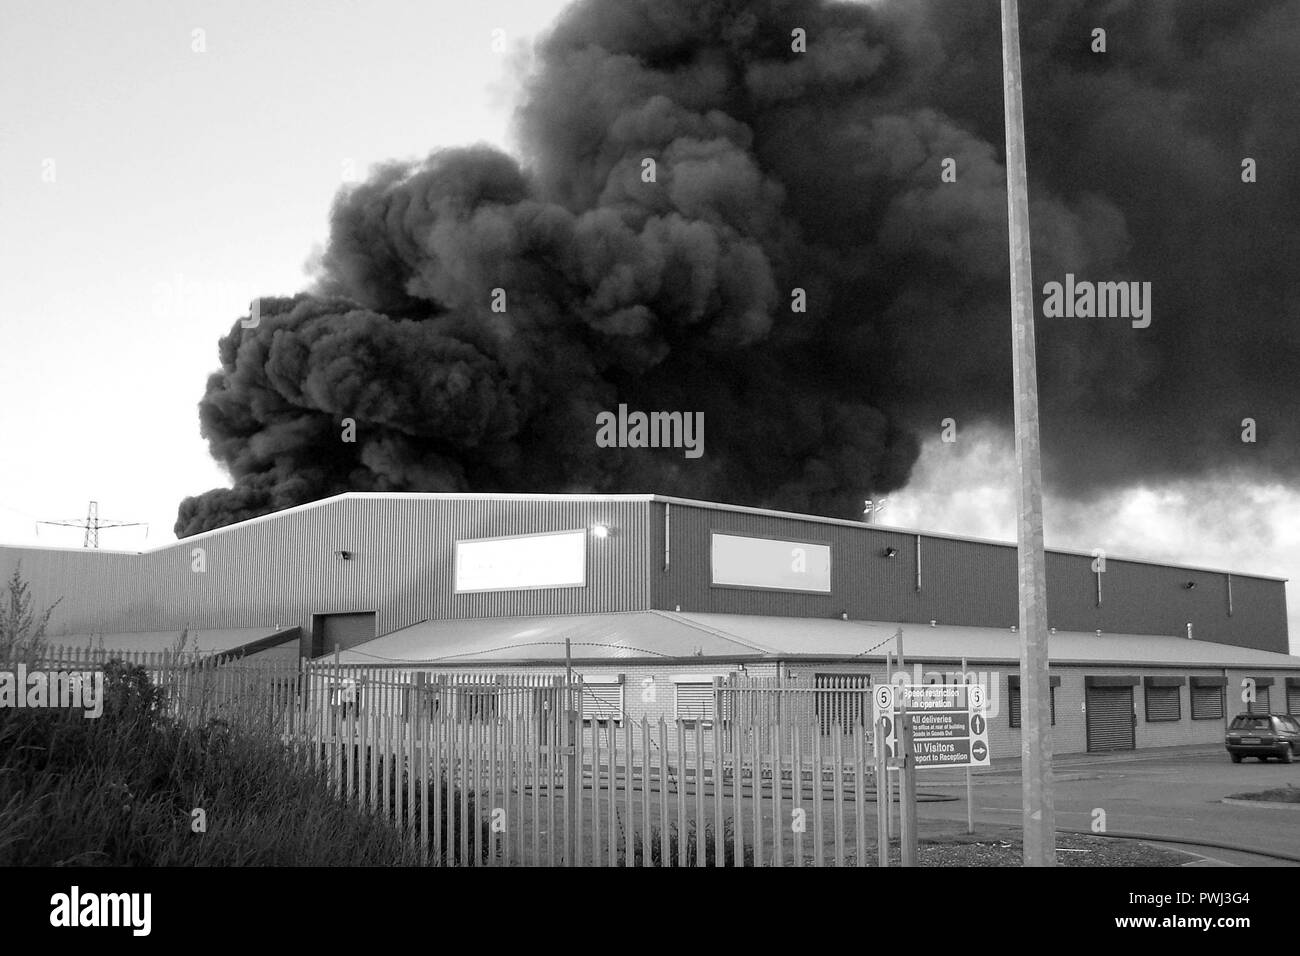 Ataque aéreo en refinería, incendio industrial, guerra de Ucrania Foto de stock